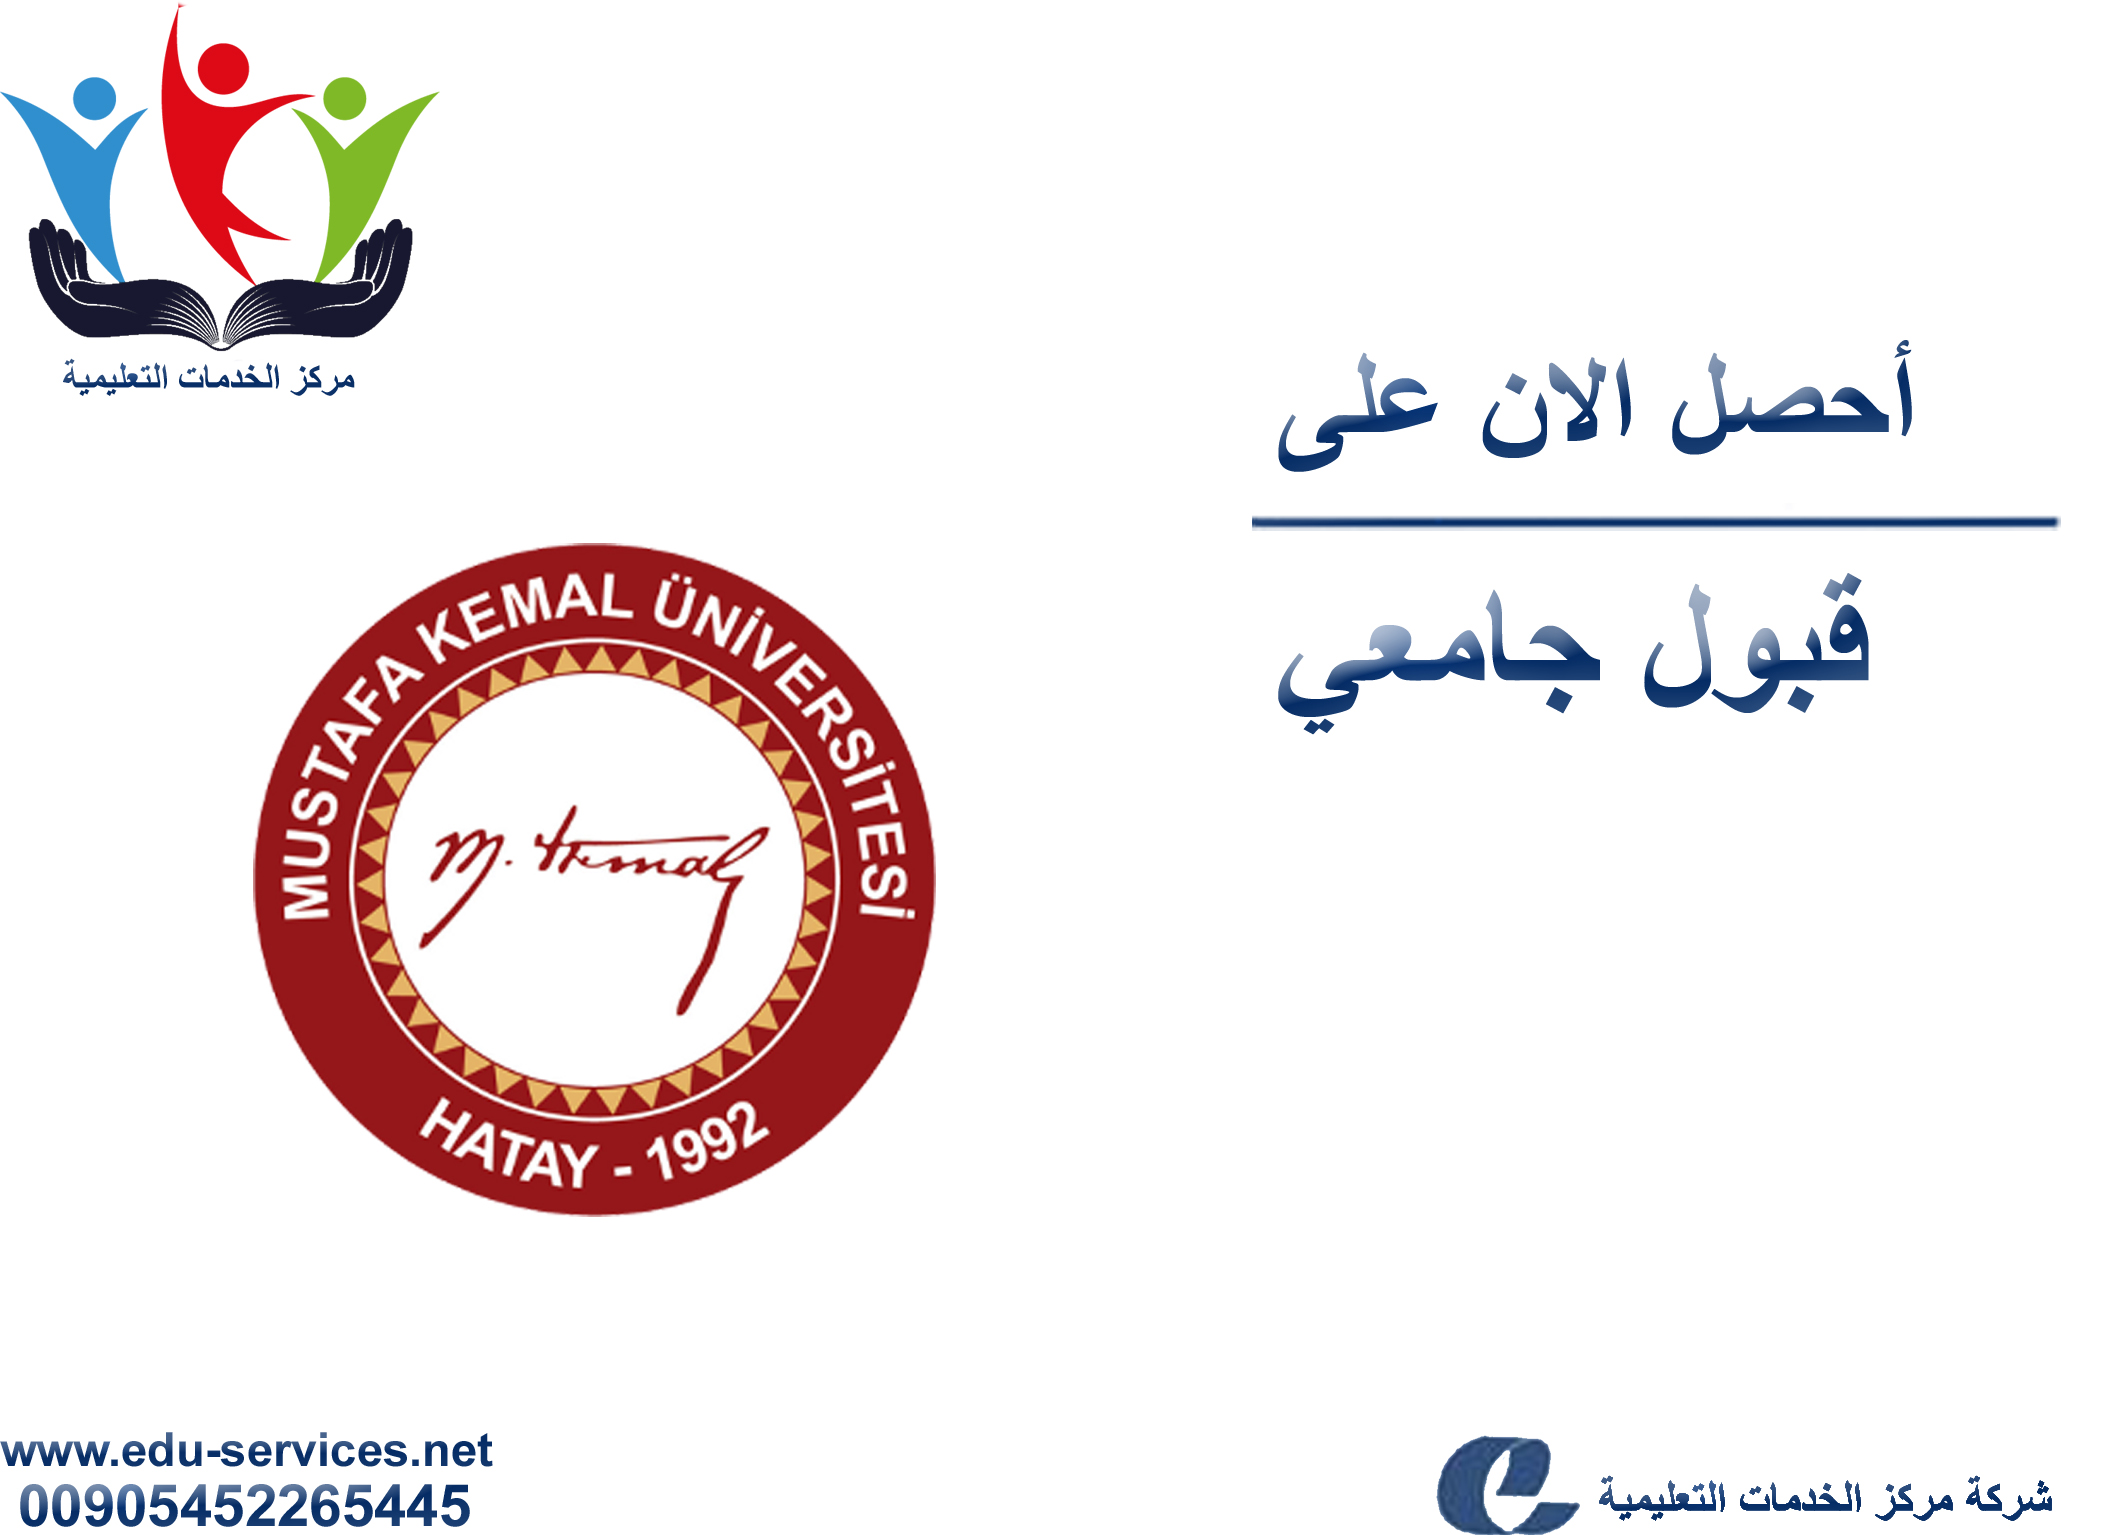 افتتاح التسجيل على جامعة مصطفى كمال للدراسات العليا للعام 2018